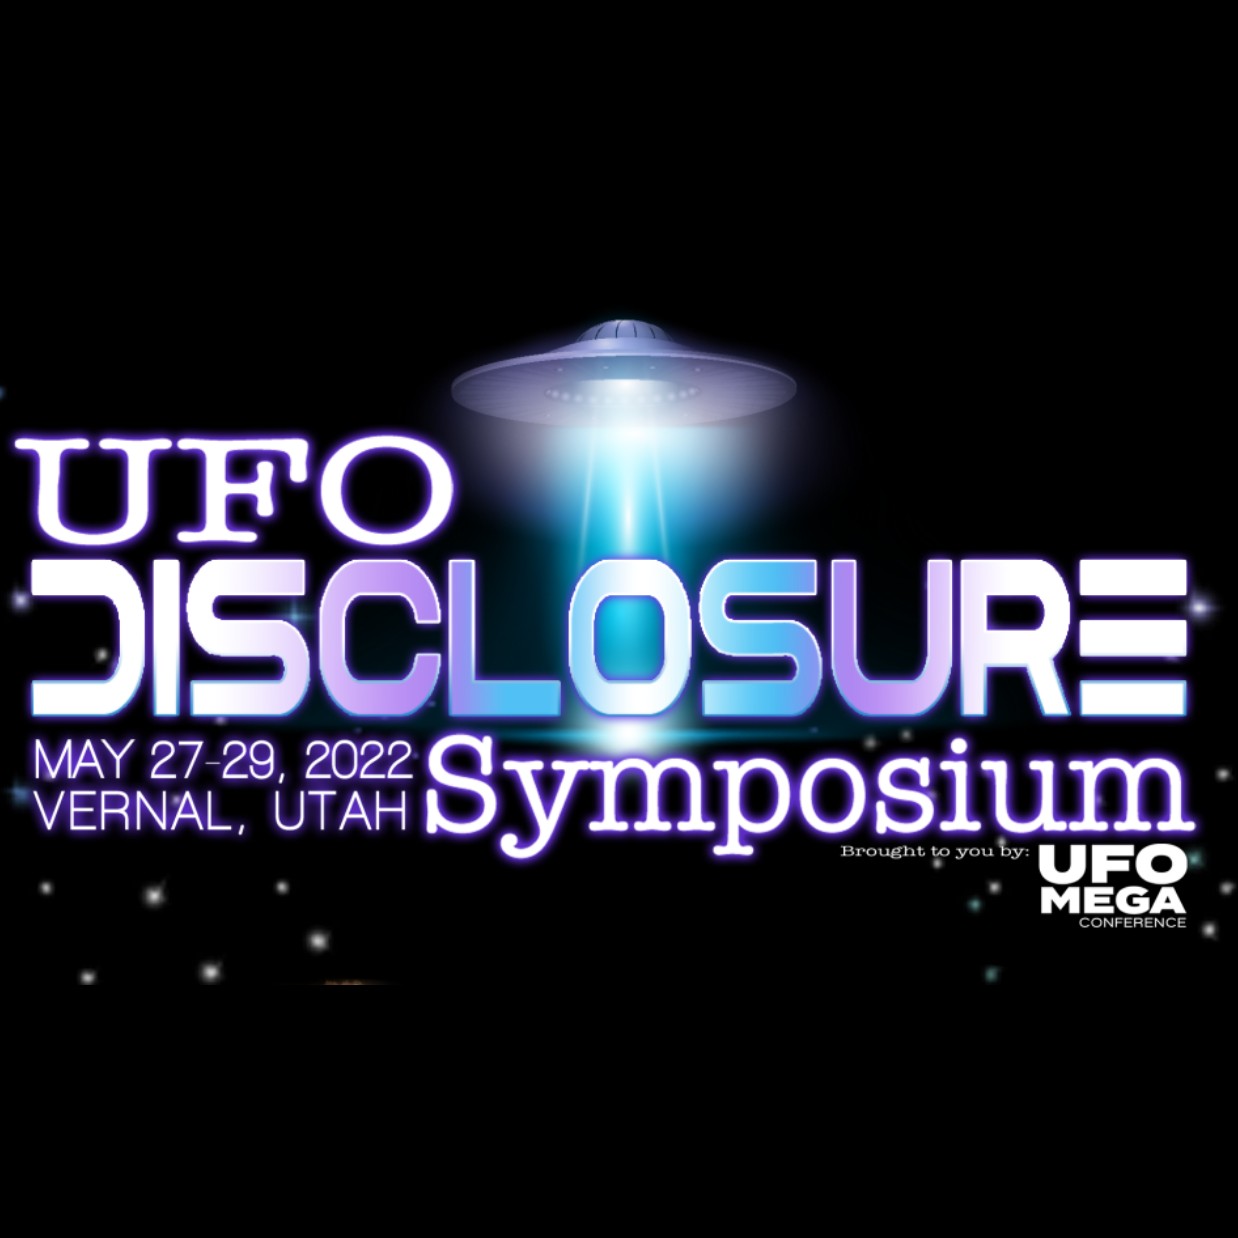 UFO Disclosure Symposium